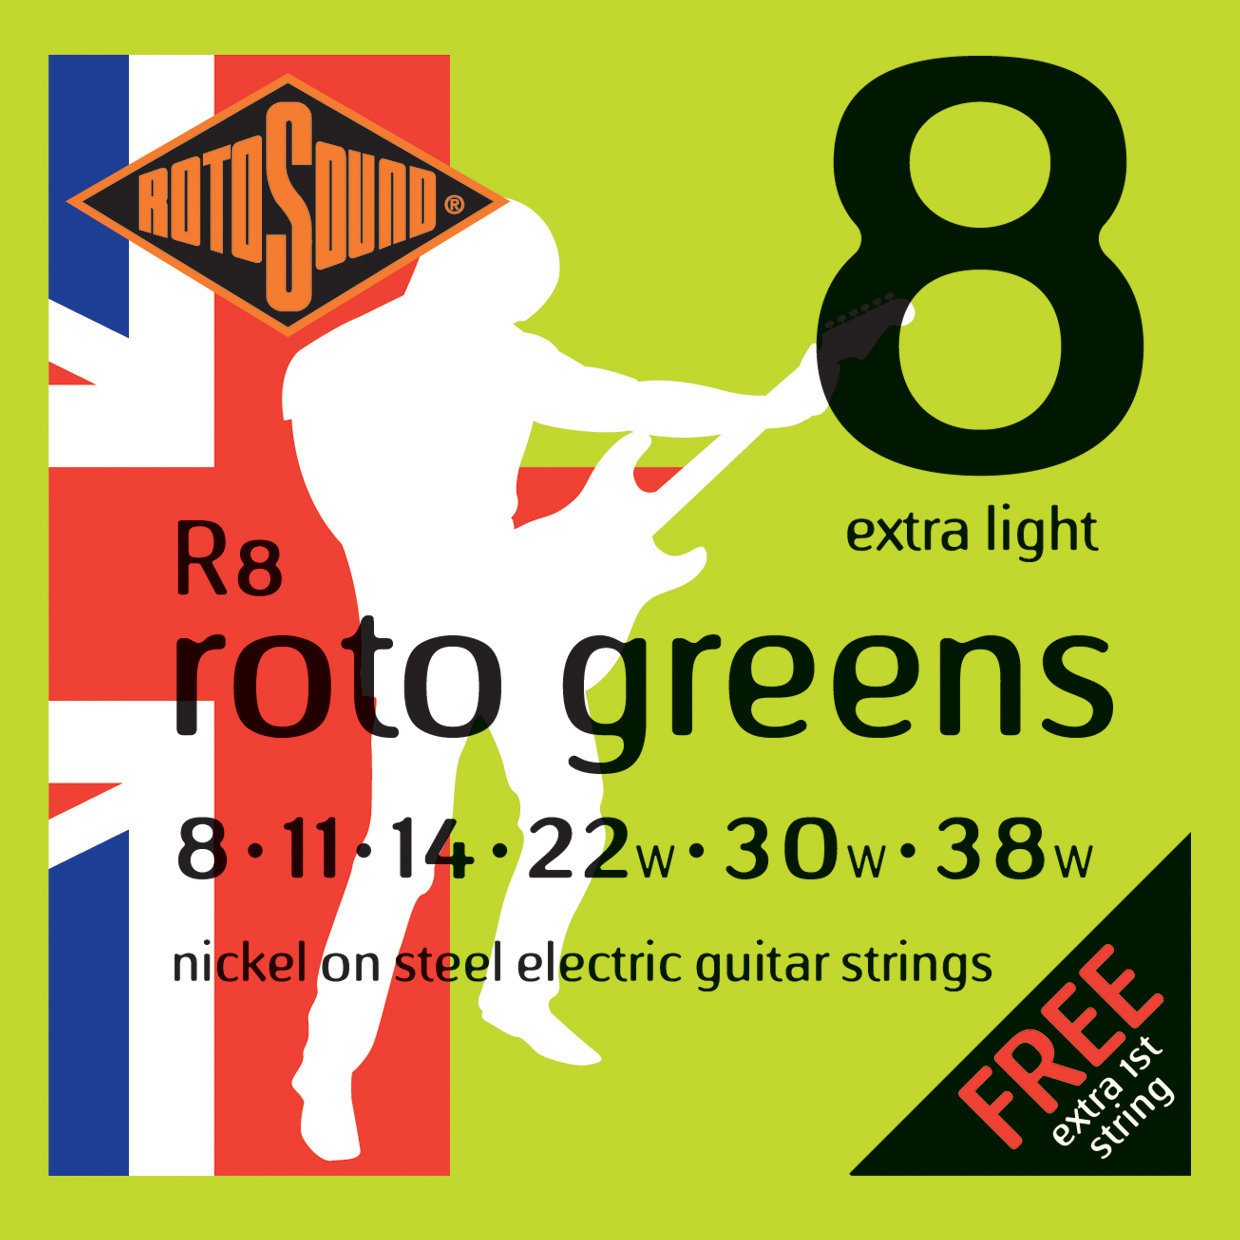 E-guitar strings Rotosound R8